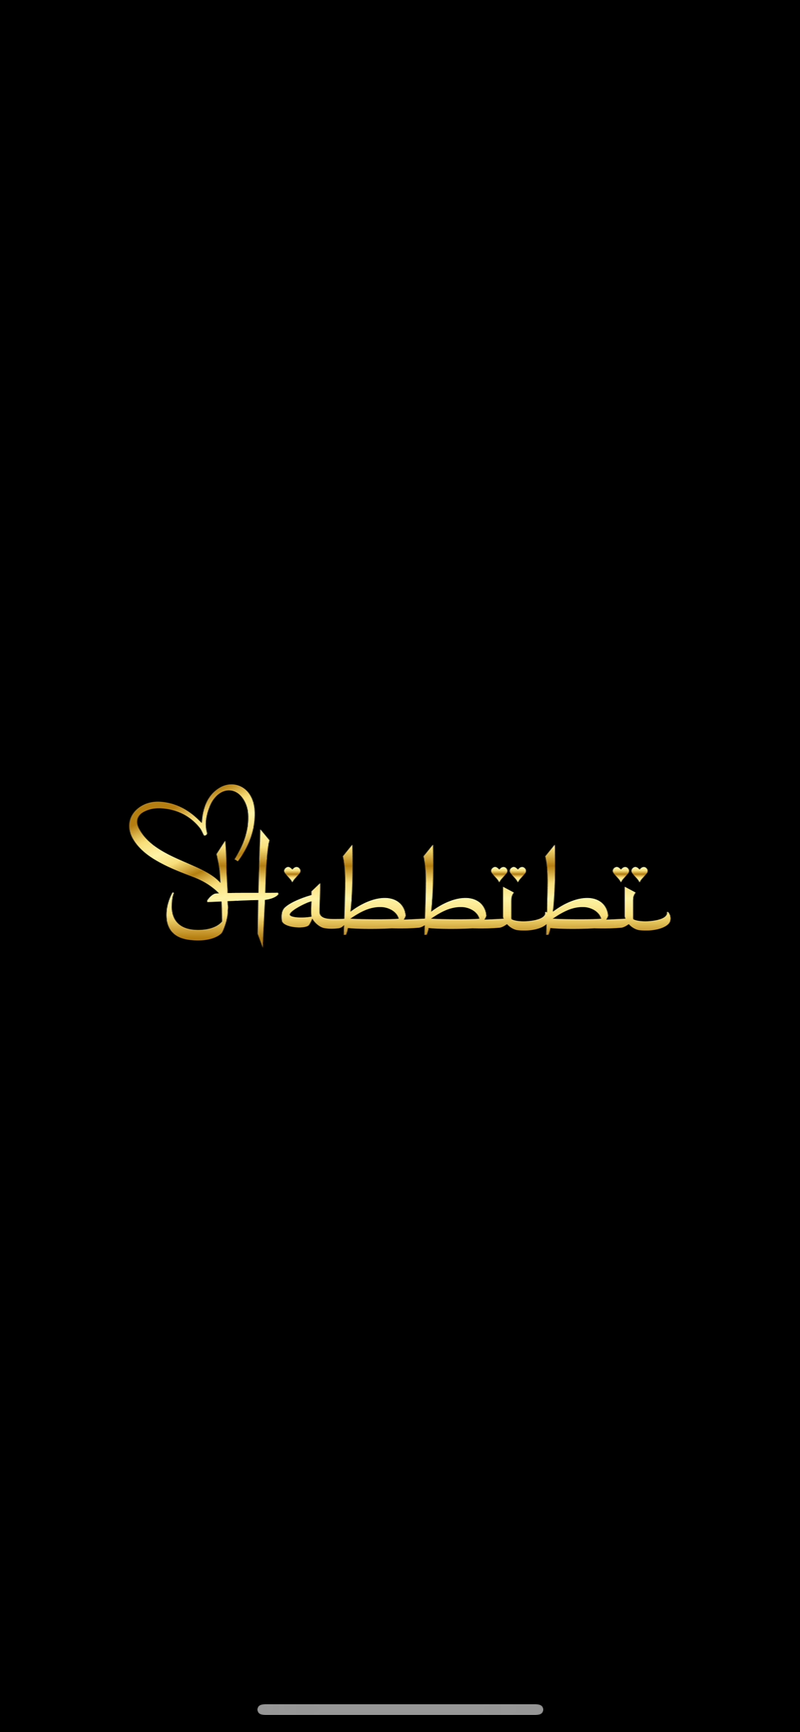 Habbibi Slides